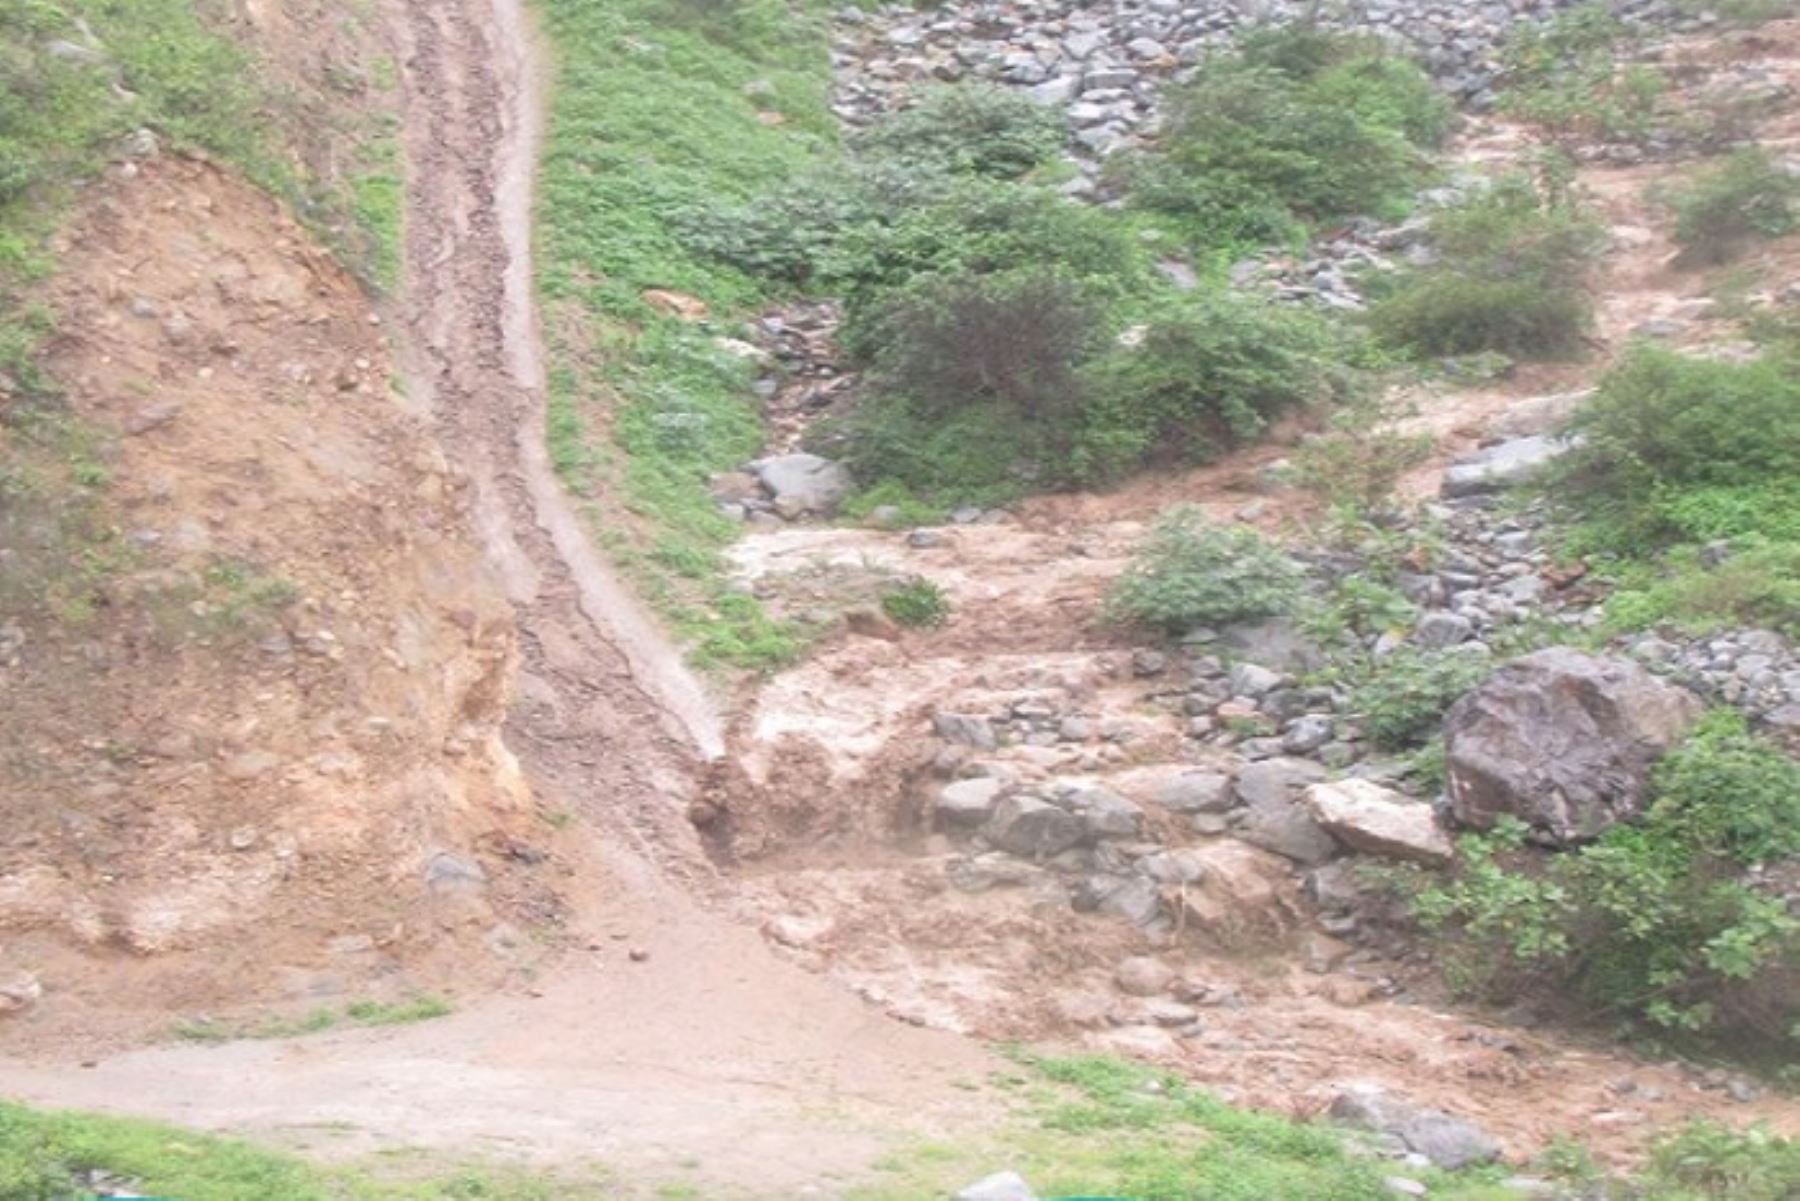 Lluvias intensas provocaron un huaico que ha afectado la vía Caraz - Pamparoma, en la sierra de la región Áncash, informó el Centro de Operaciones de Emergencia Regional (COER).